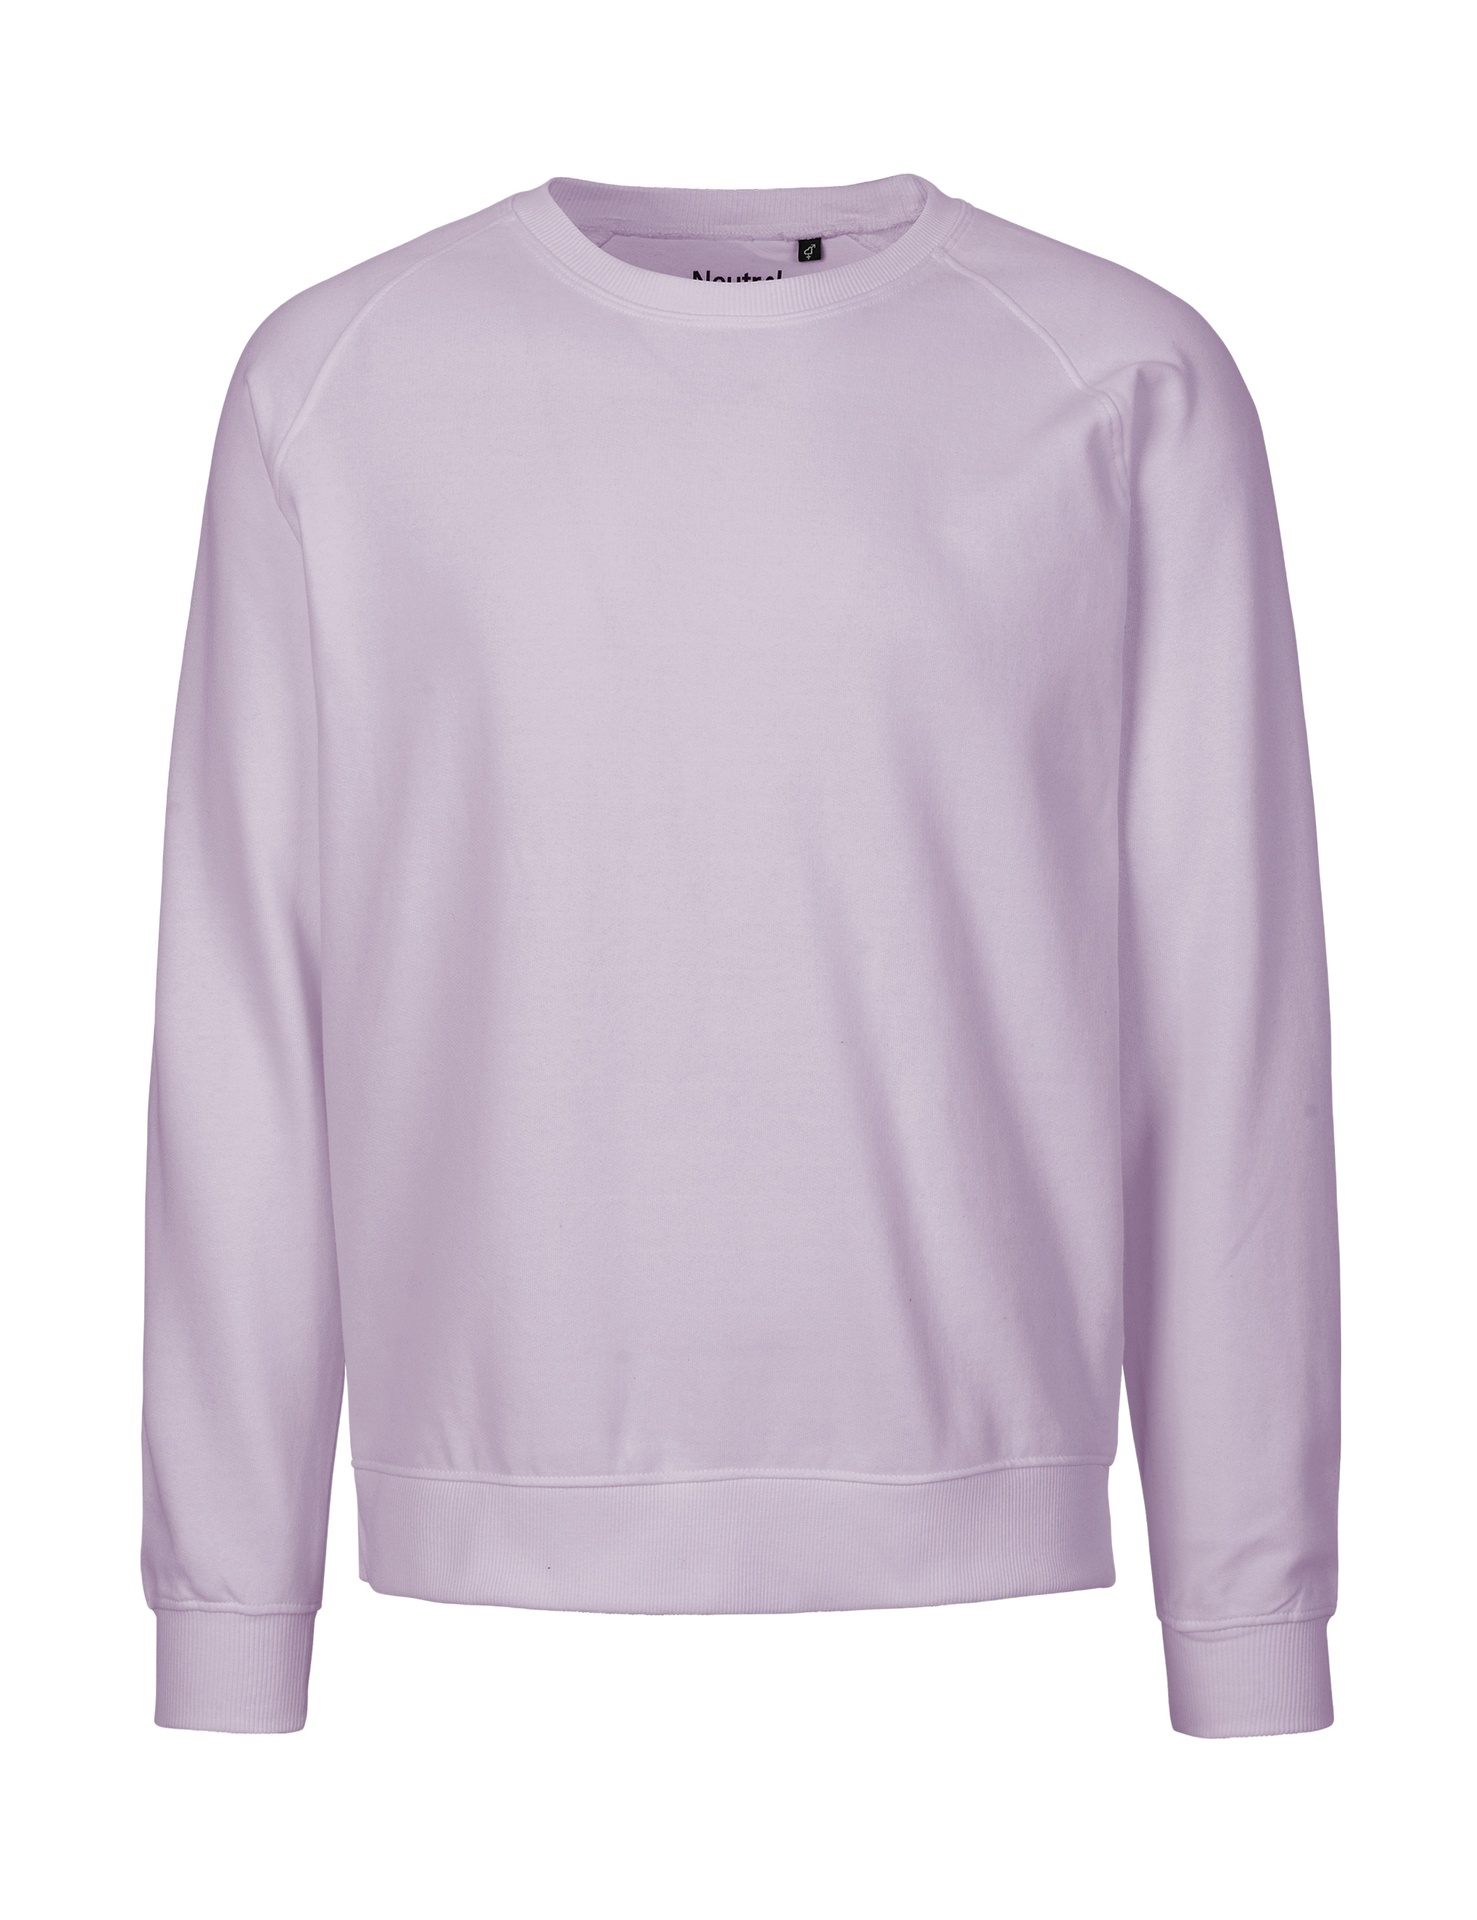 [PR/02846] Unisex Sweatshirt (Dusty Purple 42, 2XL)